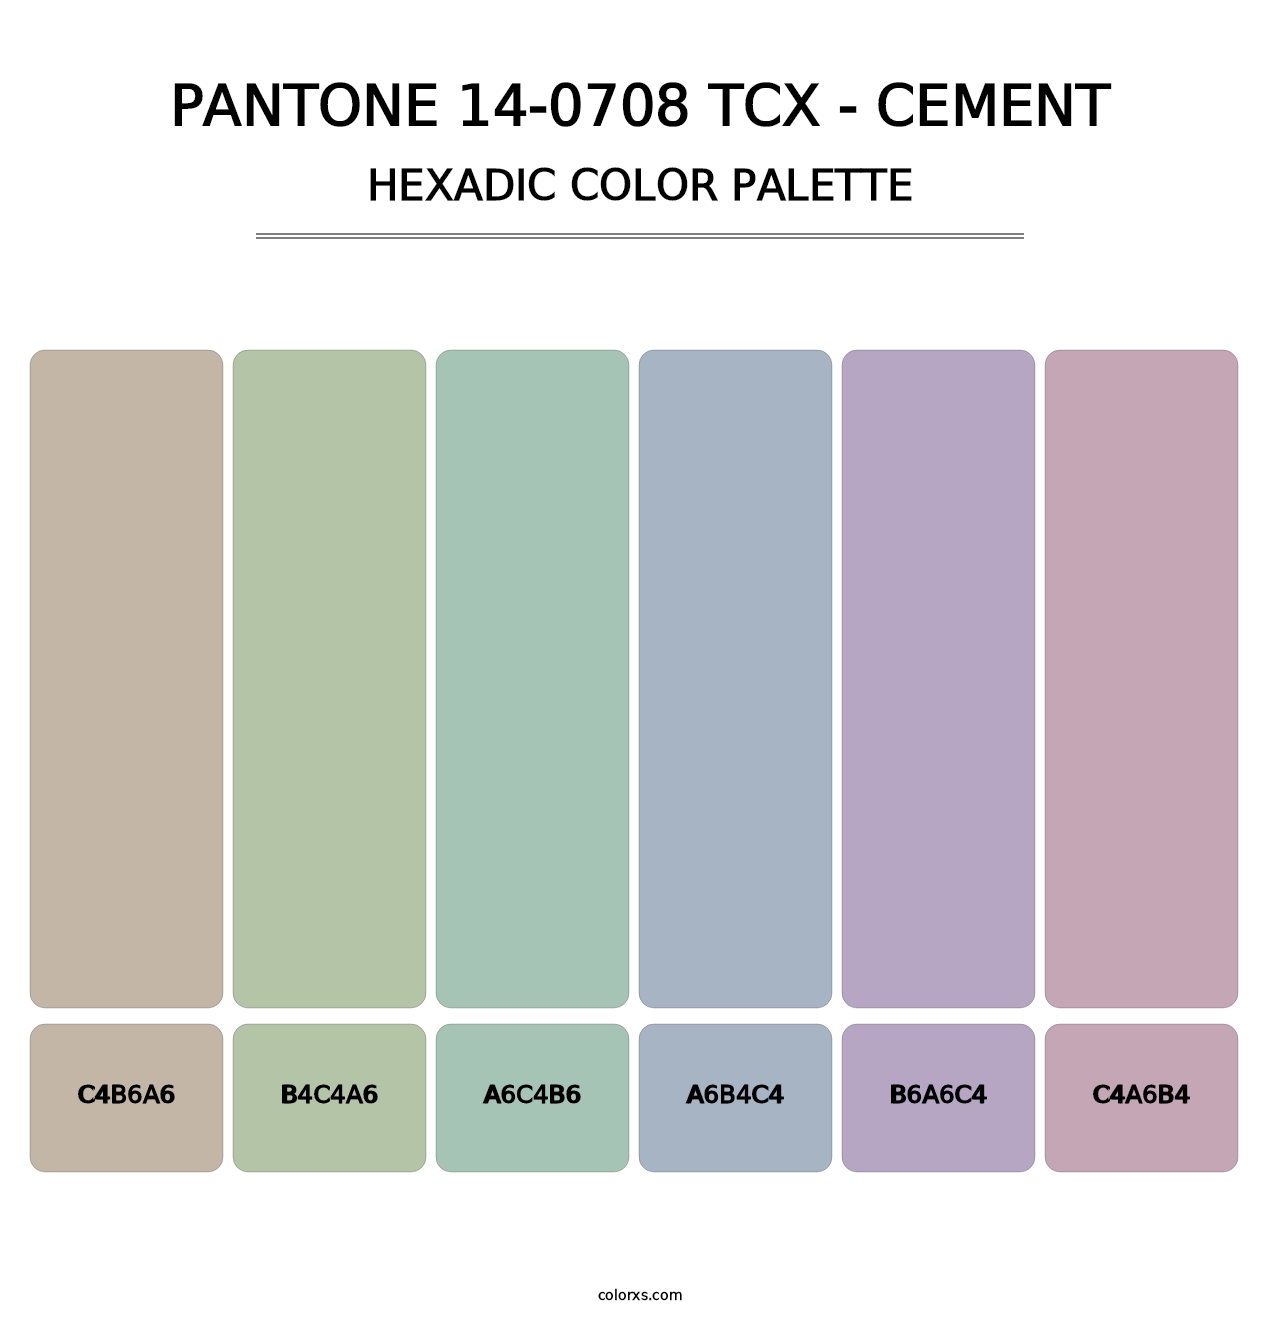 PANTONE 14-0708 TCX - Cement - Hexadic Color Palette